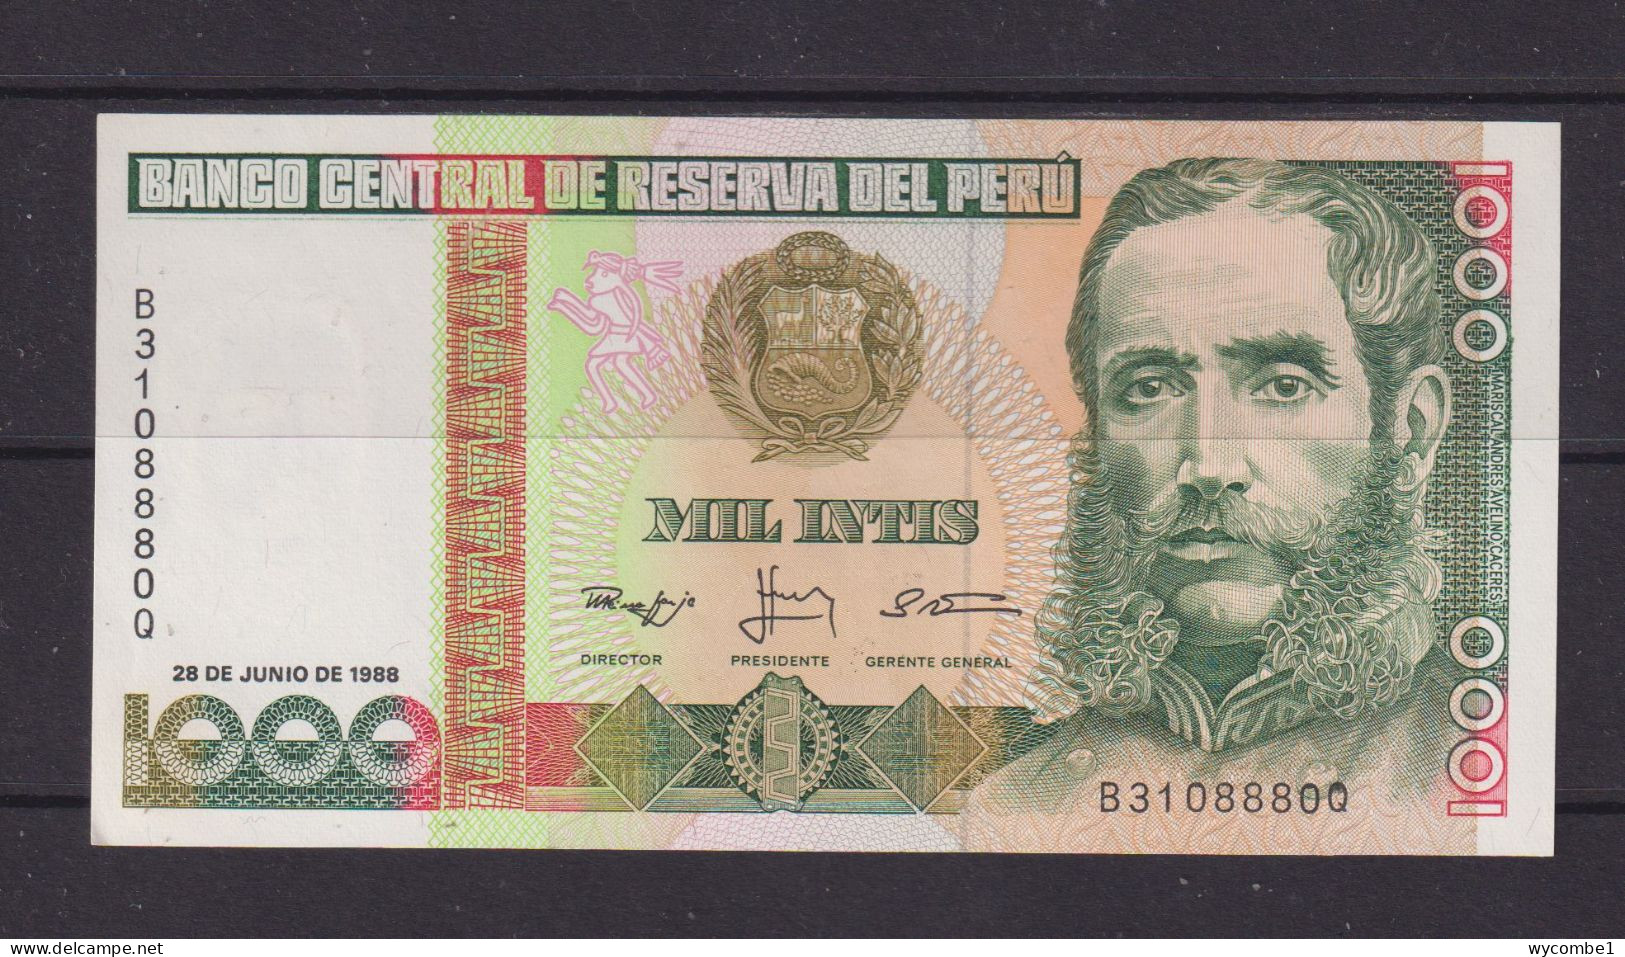 INDONESIA - 1988 1000 Intis UNC Banknote - Perù